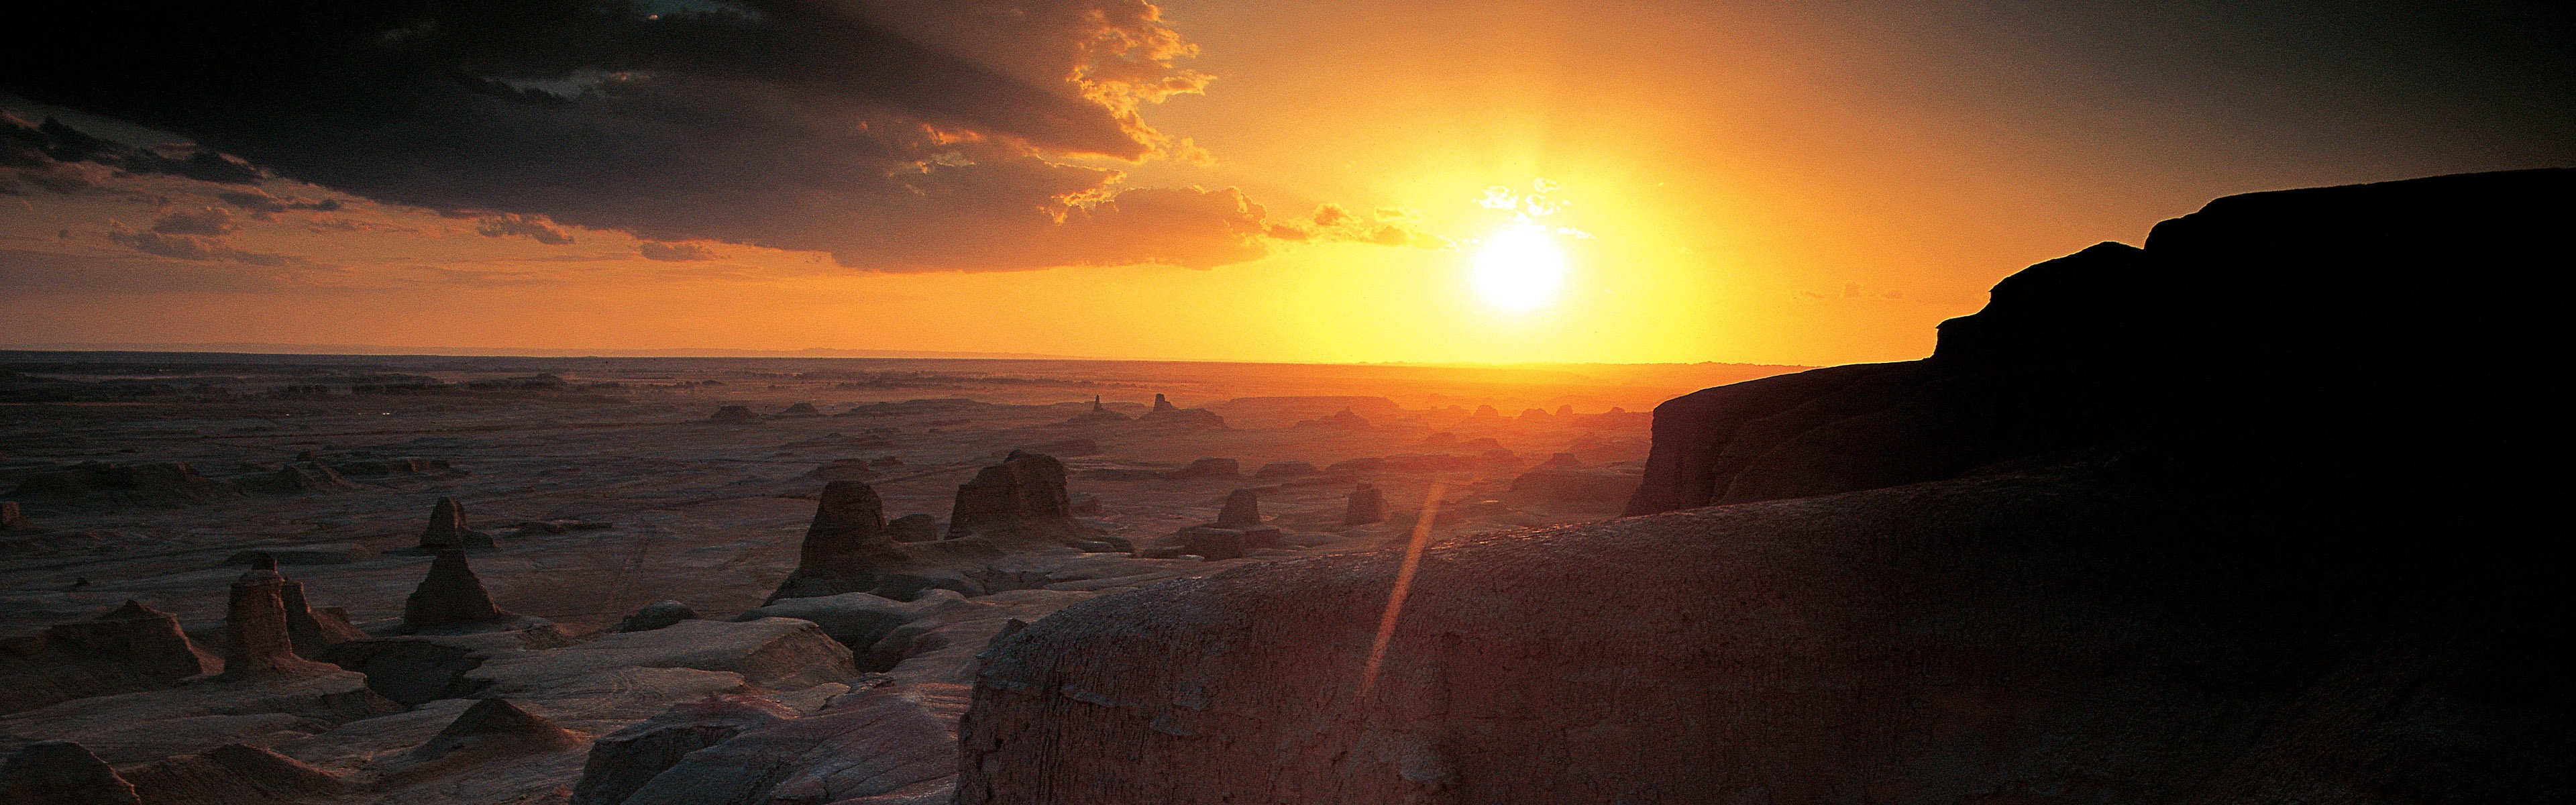 Les déserts chauds et arides, de Windows 8 fonds d'écran widescreen panoramique #12 - 3840x1200